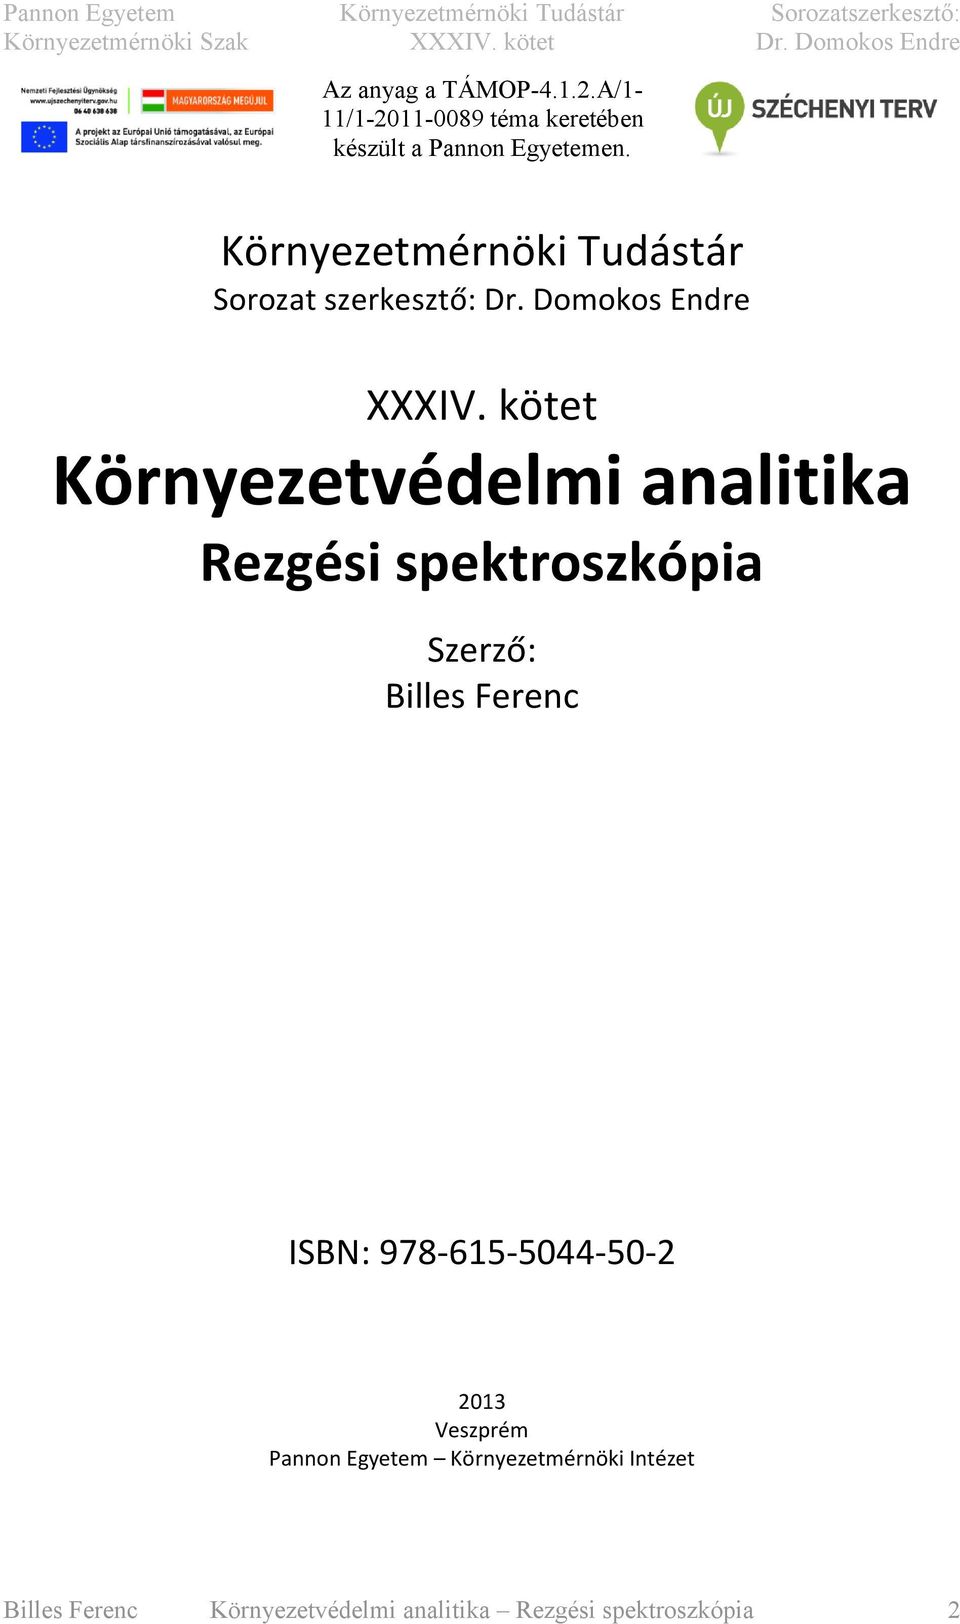 kötet Környezetvédelm analtka Rezgés spektroszkópa Szerző: Blles Ferenc ISBN: